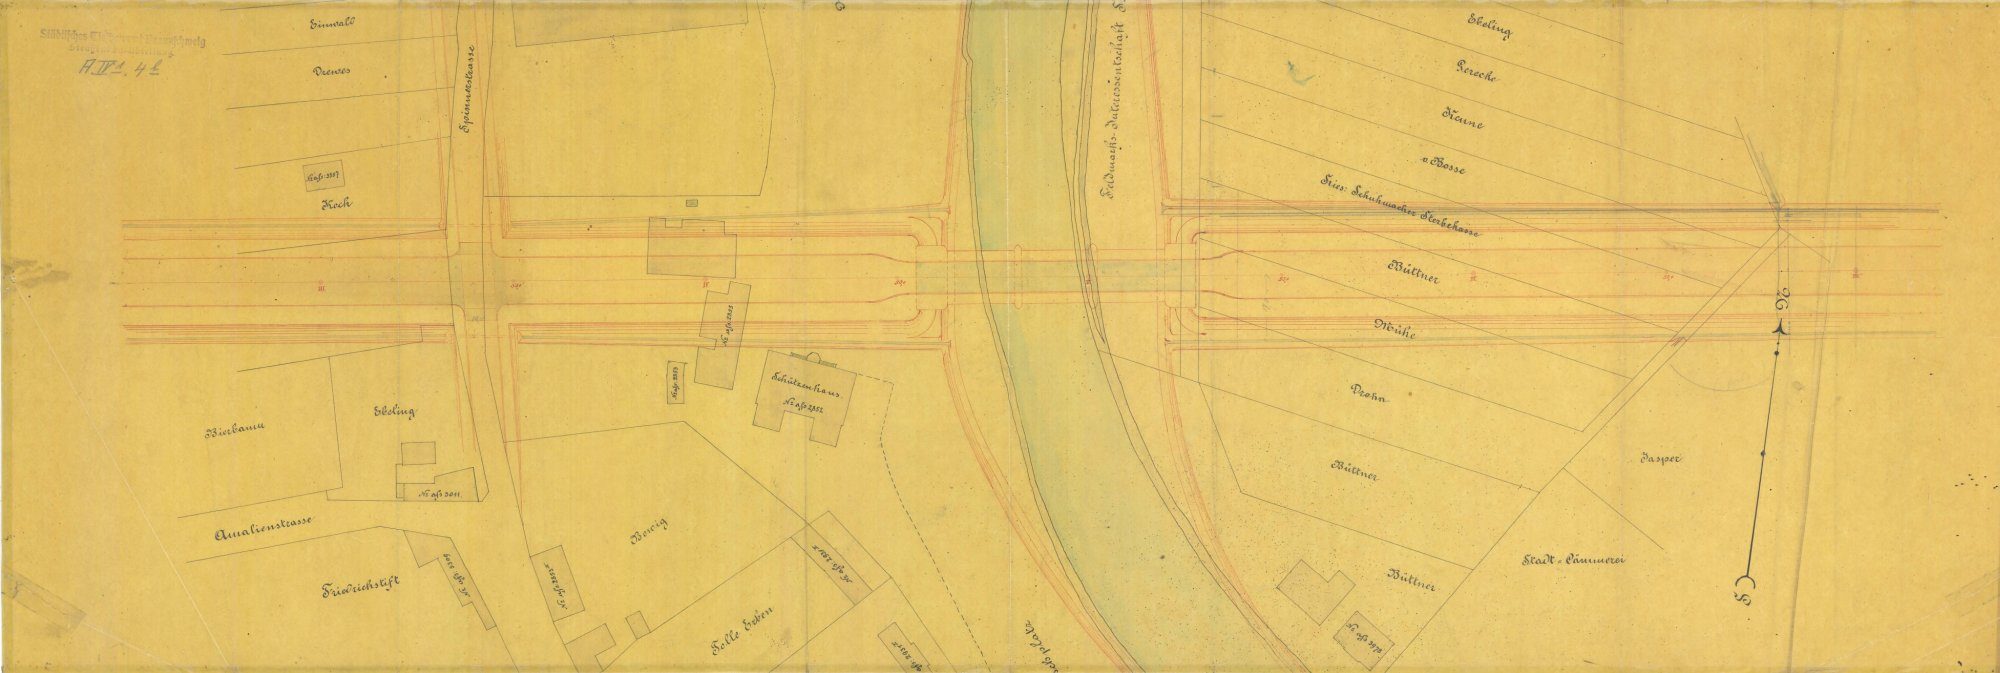 Wendenringbrücke, Planung des nördlichen Rings, Lageplan, 1889 (Wird bei Klick vergrößert)